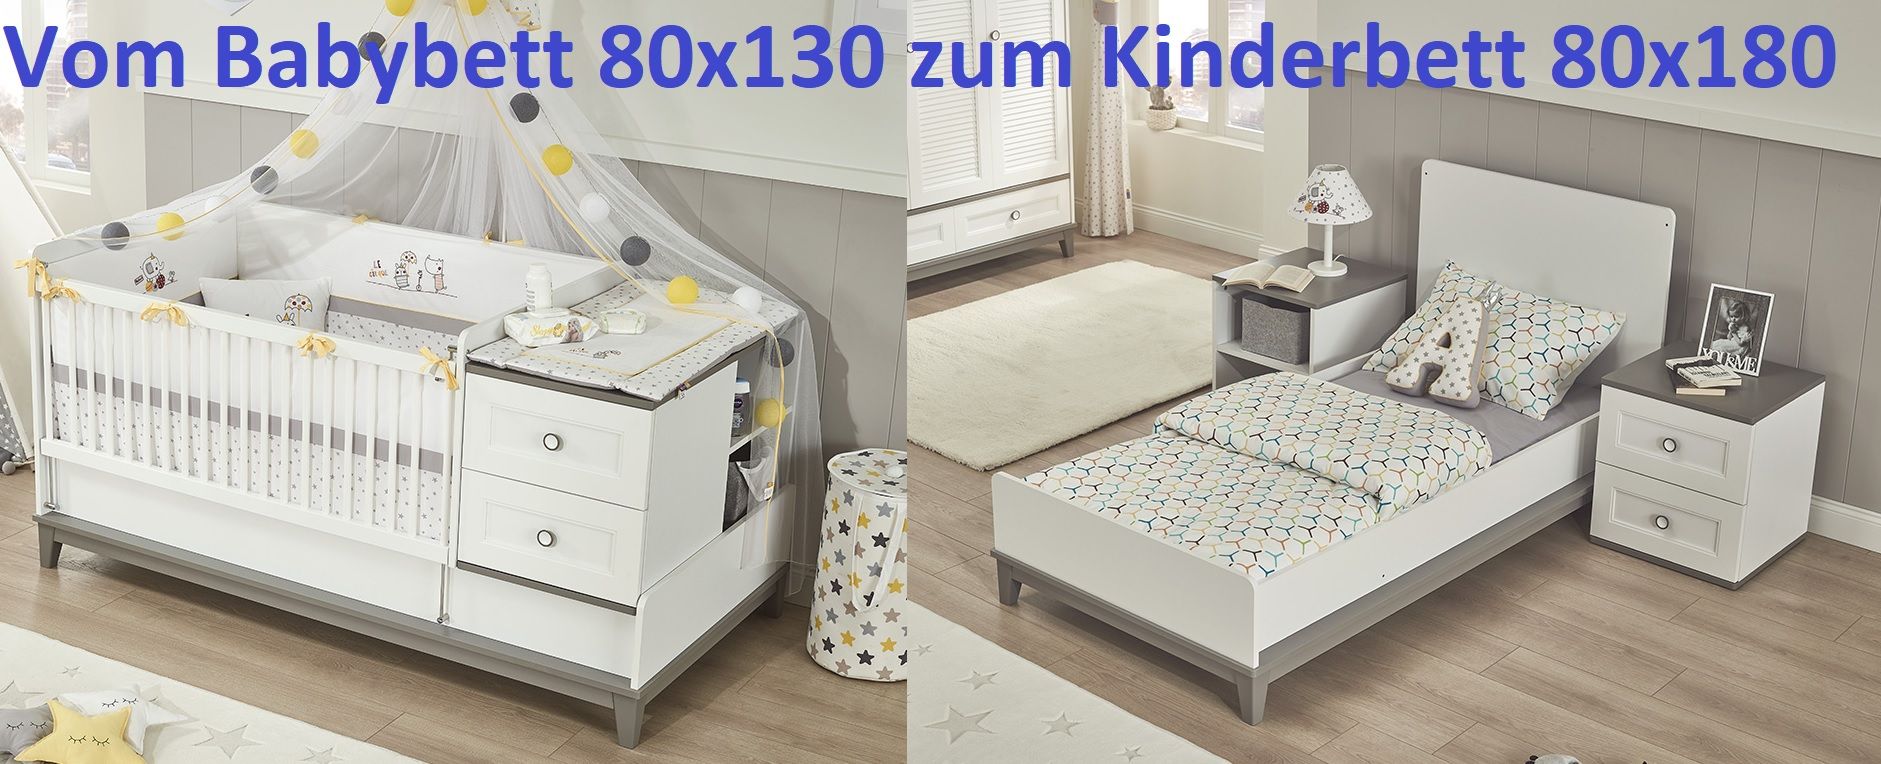 Kinderbett Mia vergrößerbar 80x130-180 cm inkl. 2-Schubladen in Weiss/Grau